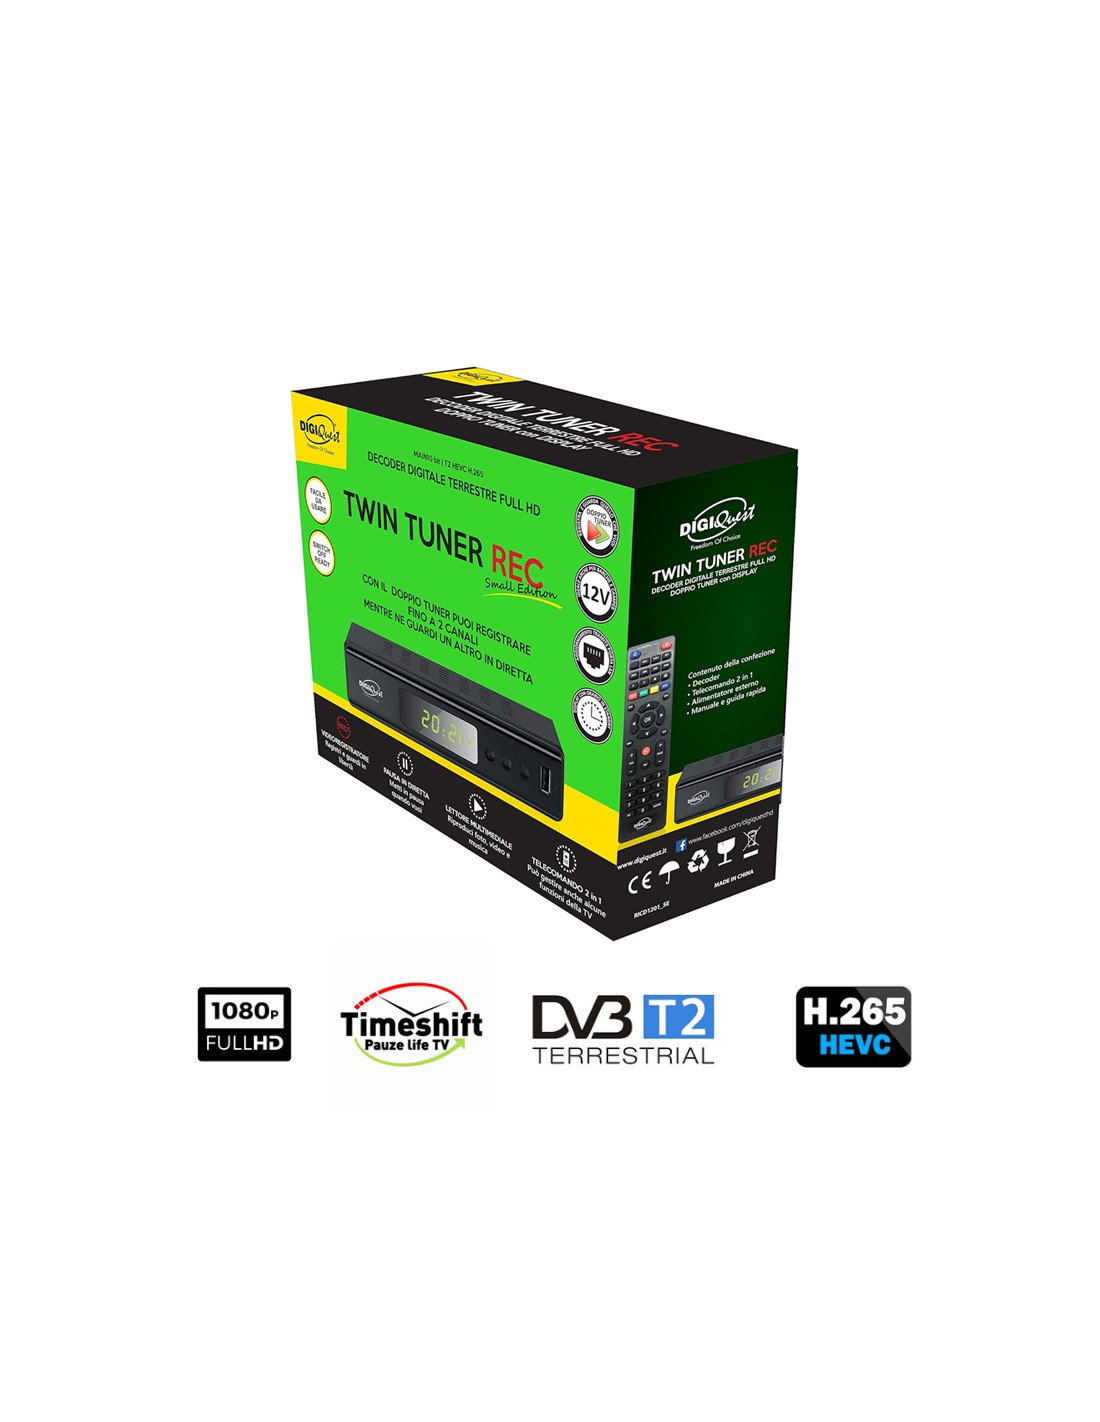 Pro Stima Sintonizador TDT HD T2 con Grabador ST-8200R